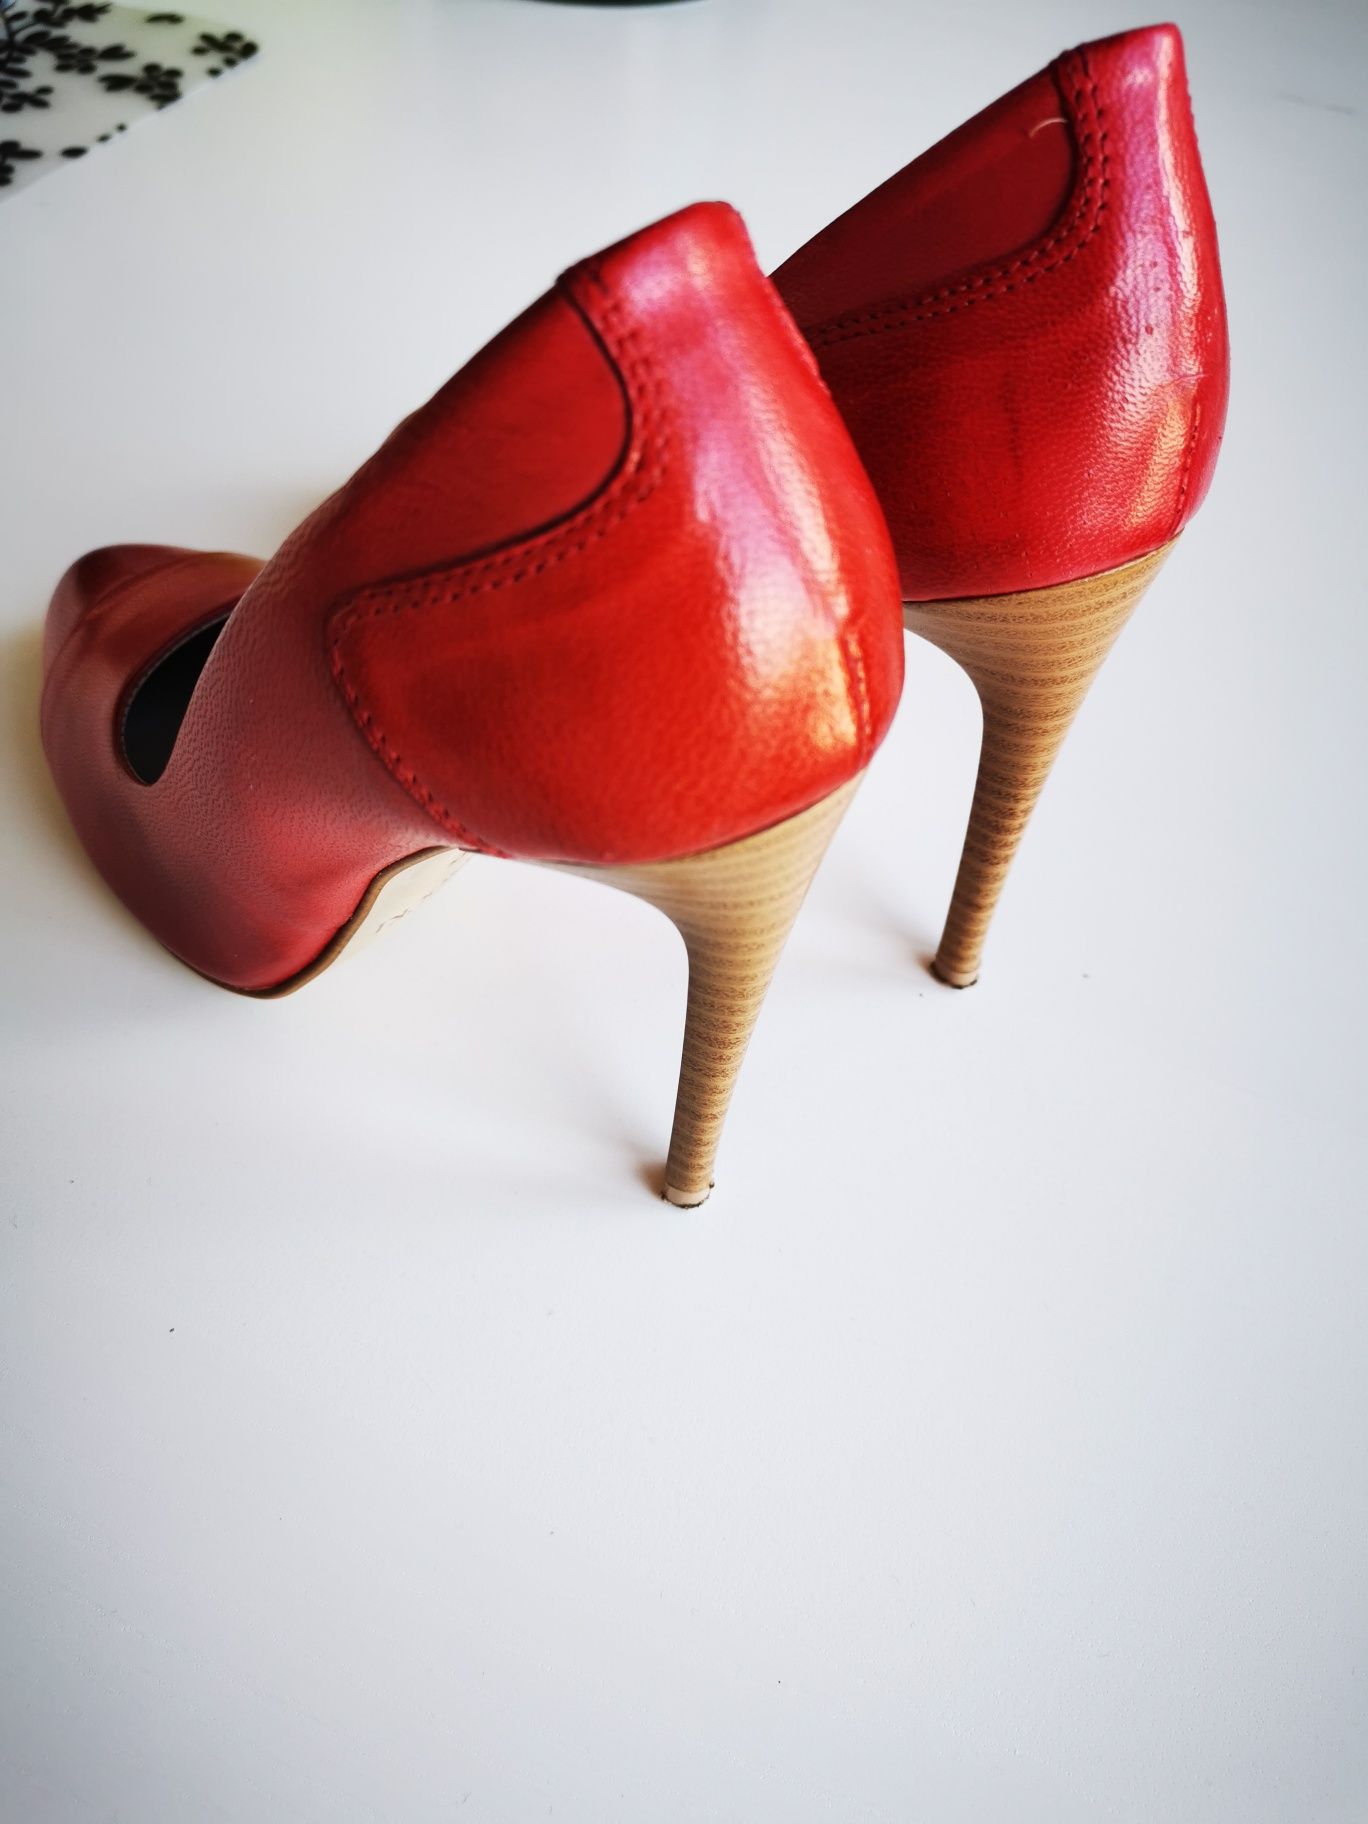 Szpilki buty Lasocki, czerwone, skórzane rozm 35